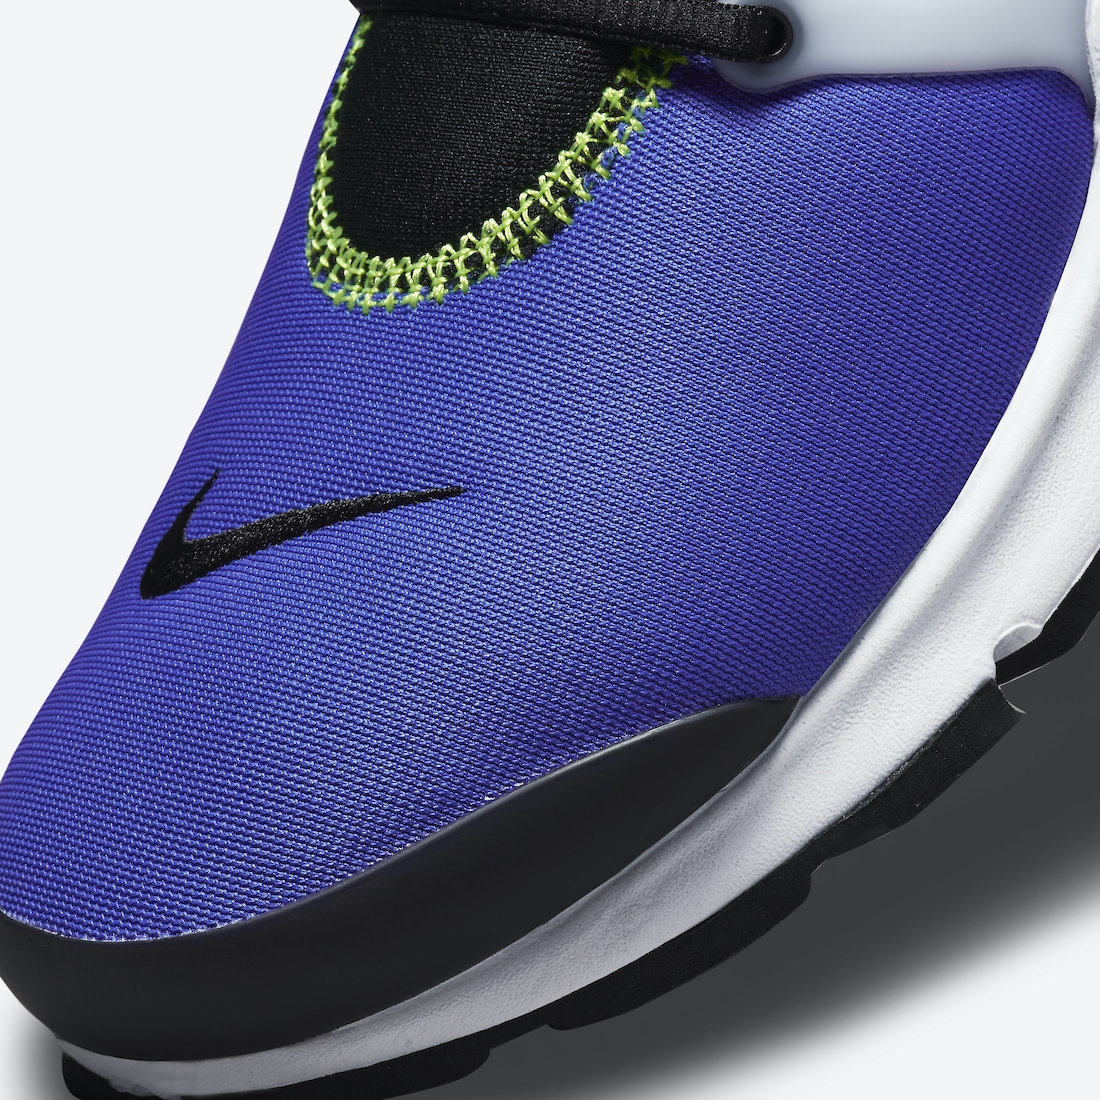 Nike Air Presto Blue Volt DO6693-500 Release Date Info